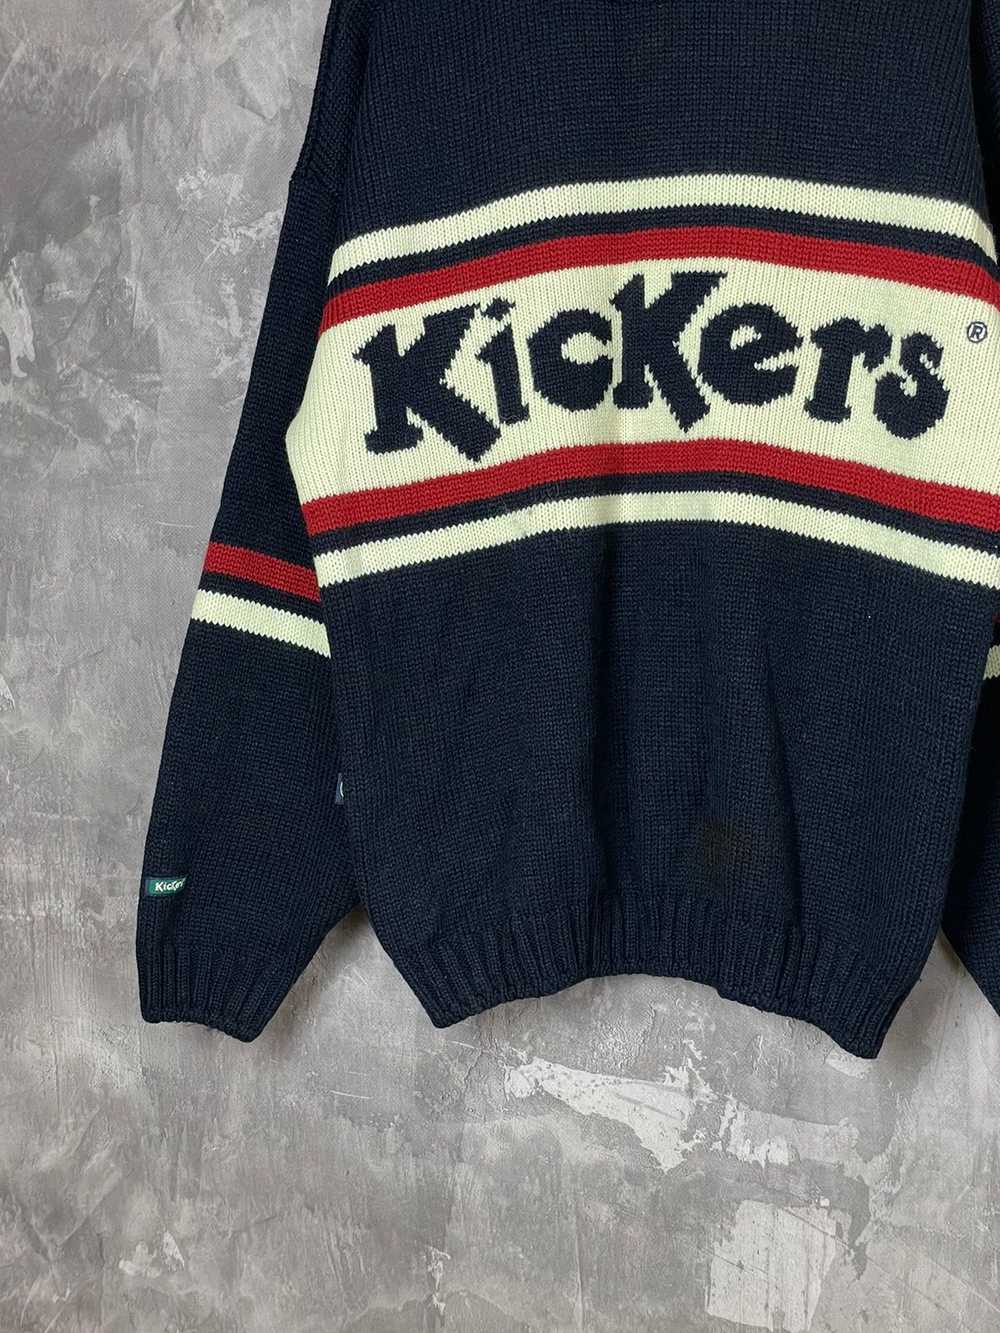 Kickers × Streetwear × Vintage Vintage 90s Kicker… - image 5